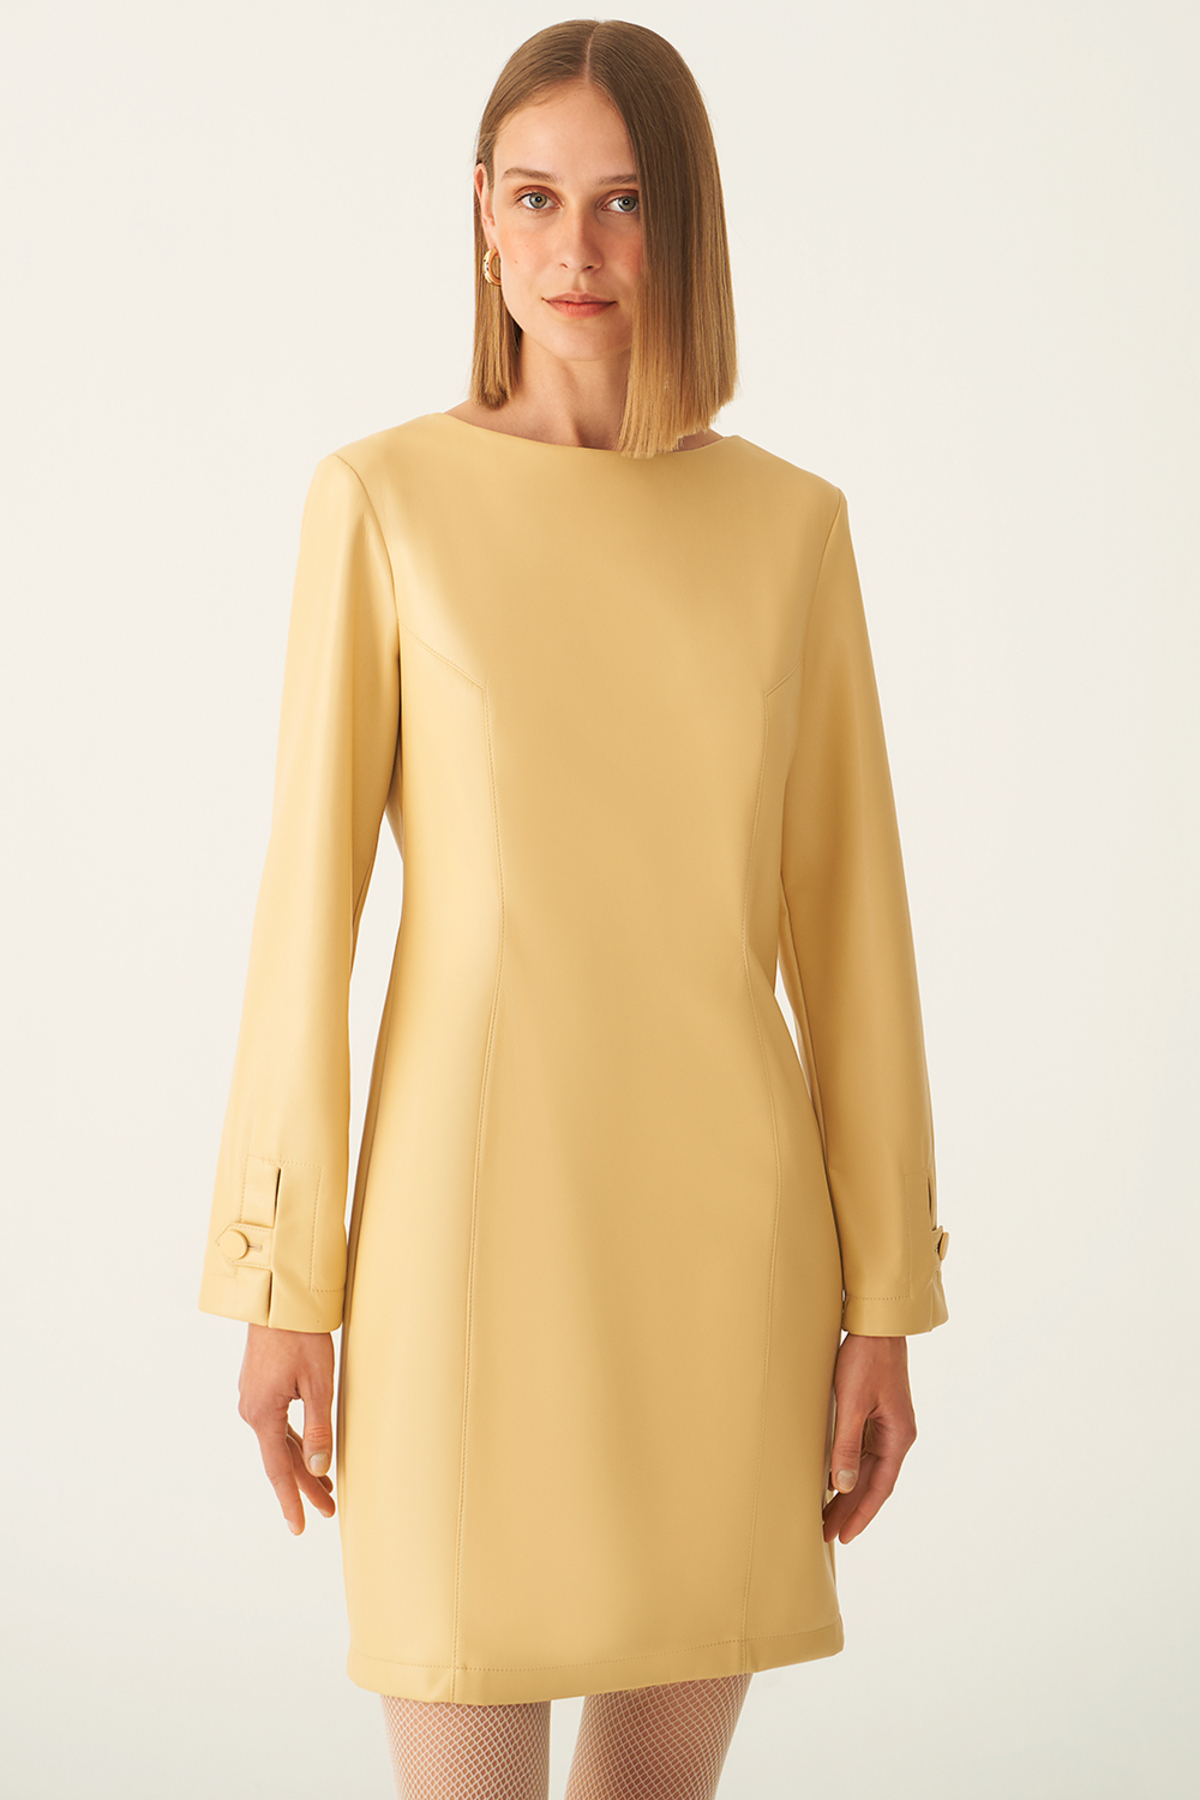 цена Платье Arleths стандартного кроя с вырезом лодочкой выше колена медового цвета Perspective, желтый